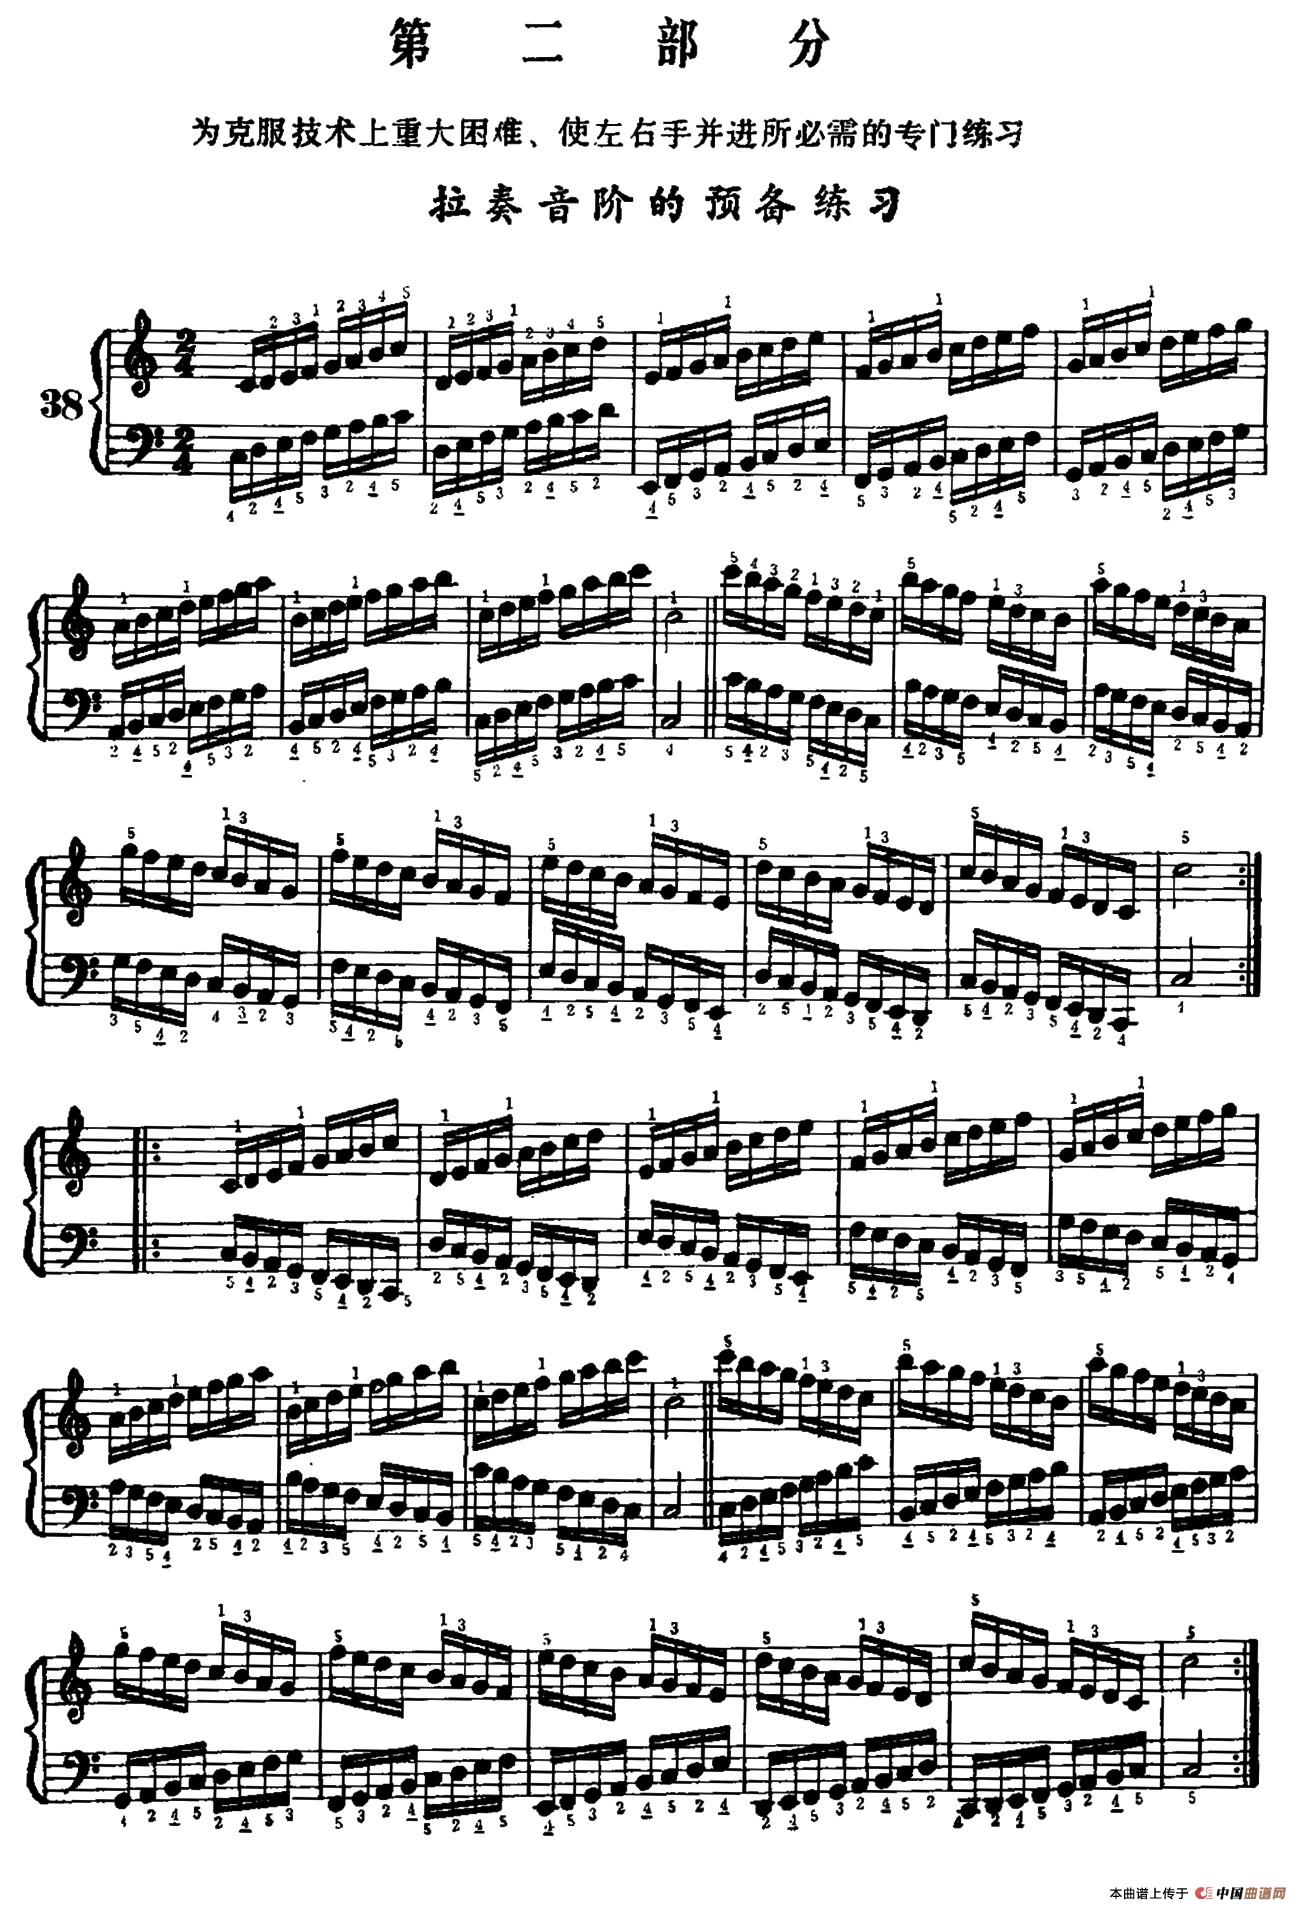 手风琴手指练习 第二部分（拉奏音阶的预备练习